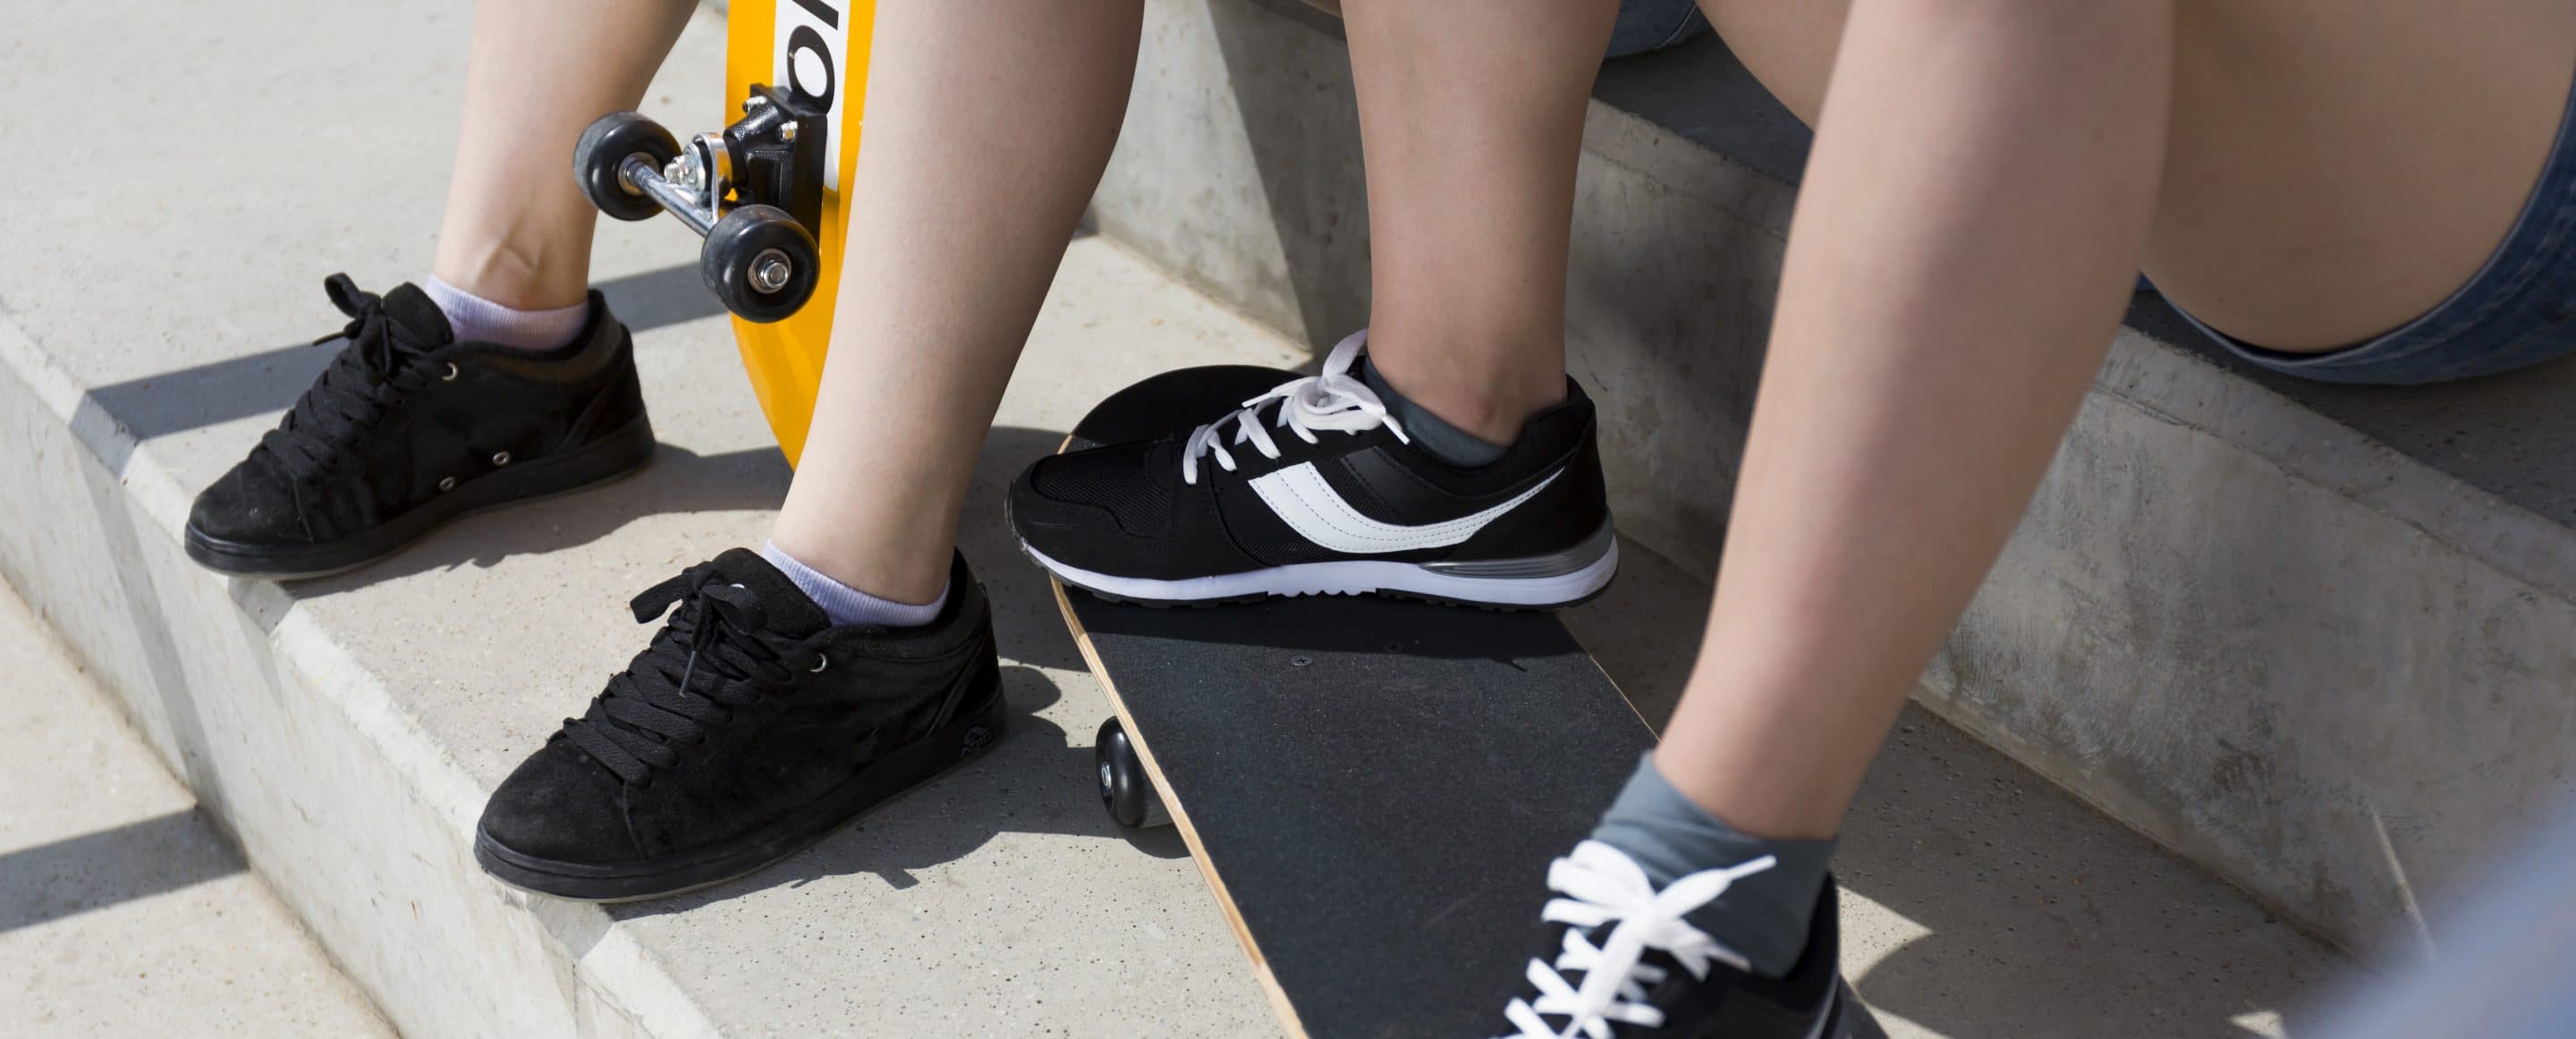 Teebeutel gegen Stinkstiefel 1 teenagers legs in sport shoes PU2XHZR scaled